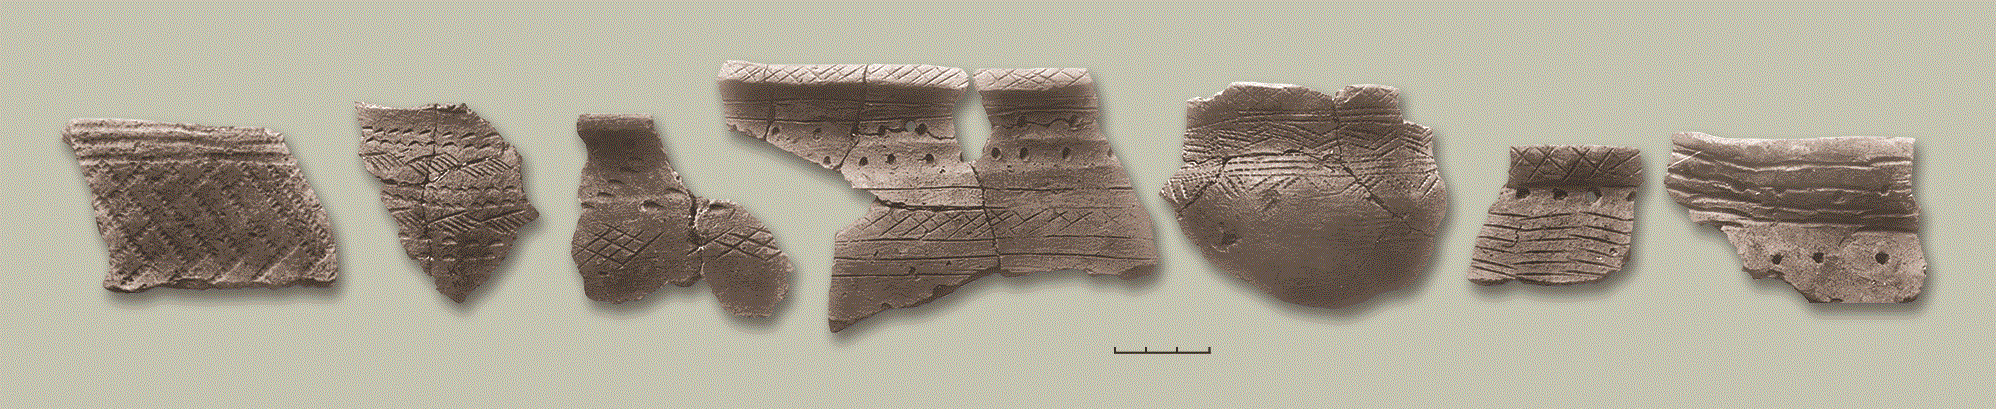 "Приказанская культура. Фрагменты глиняных сосудов. Археологические раскопки 1930 на Криушской стоянке."